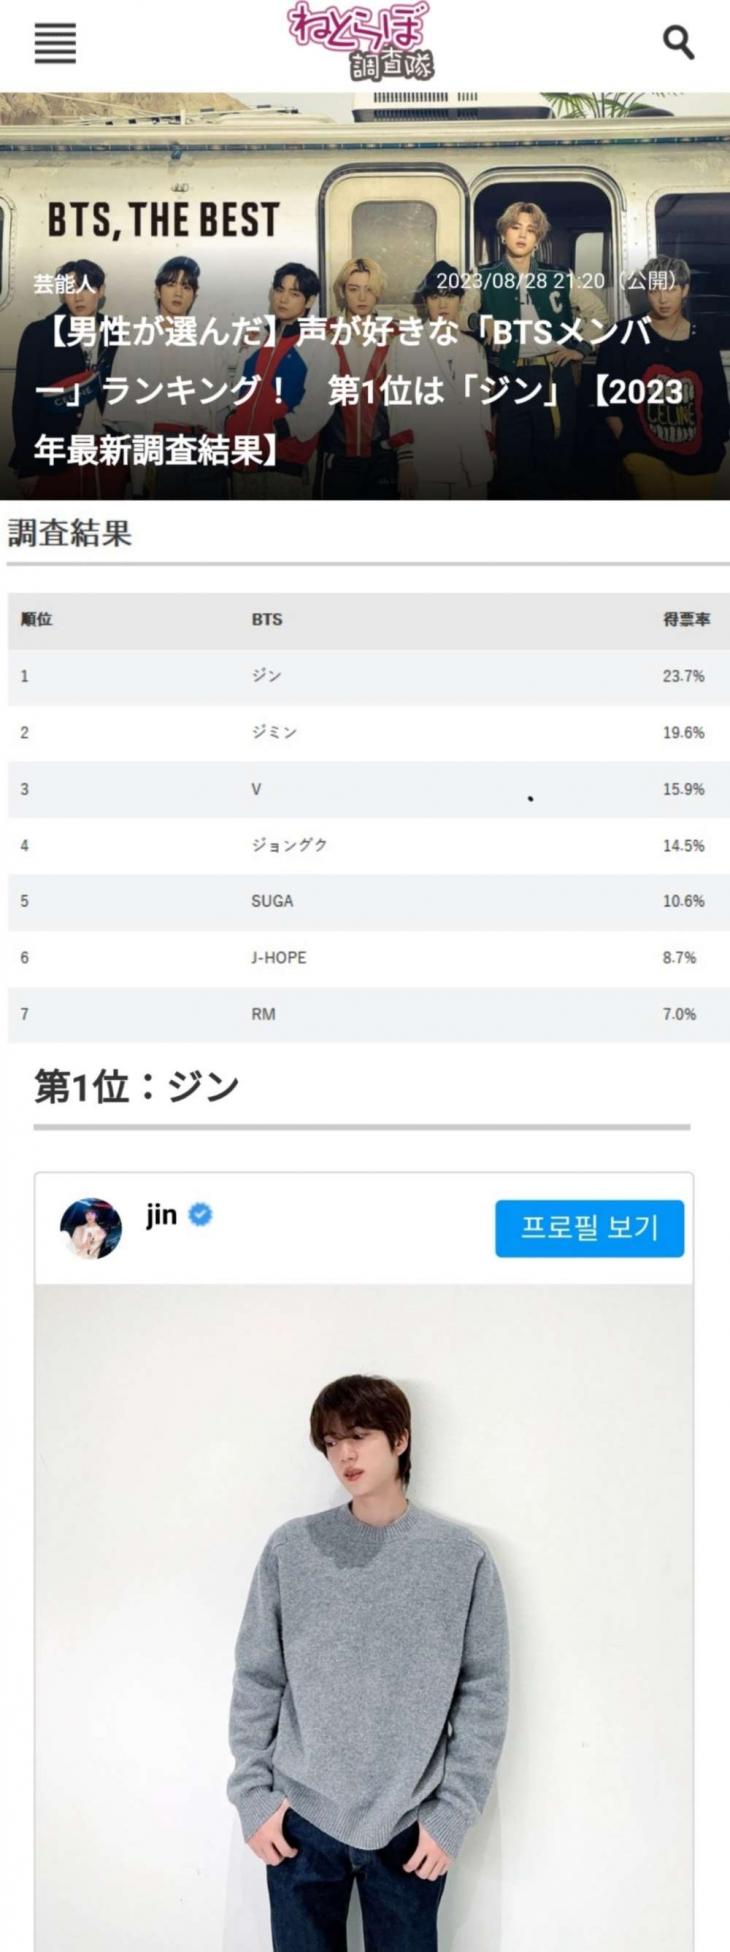 일본 IT계 뉴스 사이트 ITmedia(아이티미디어)에서 운영하는 네토라보(Netorabo), 방탄소년단(BTS) 진이 '일본 남성들이 가장 좋아하는 BTS 멤버 목소리' 1위